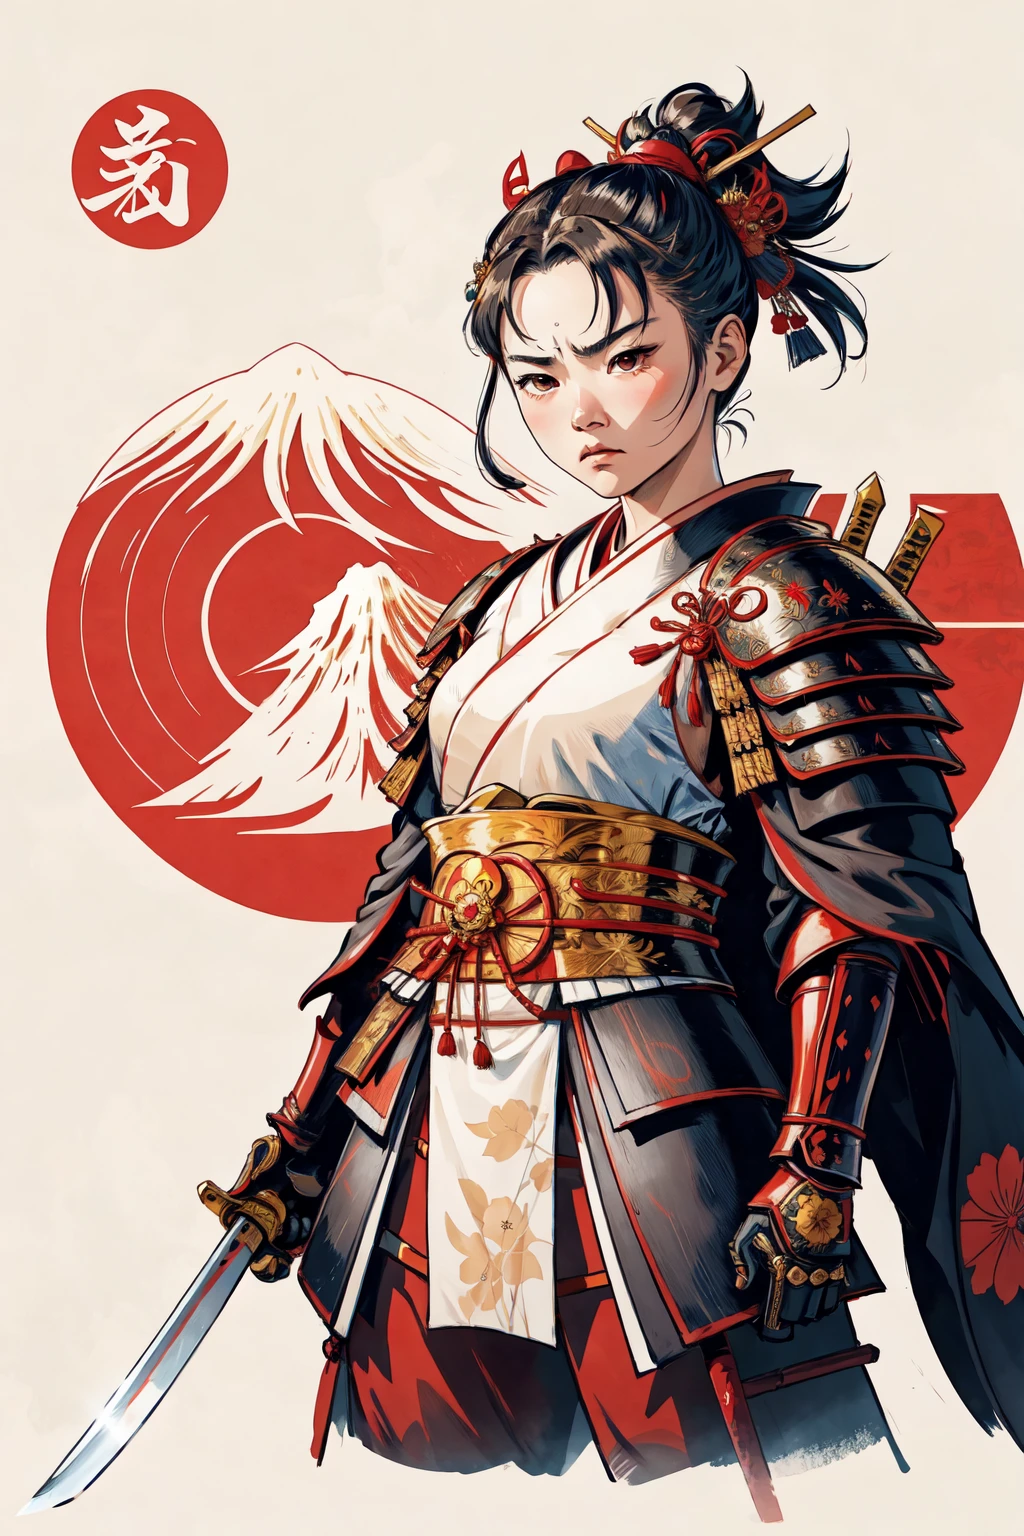 1 名女孩, 憤怒的臉,  和服,   日本武士盔甲,     日本傳統風格 ,(揮舞武士刀) ,過肩看,  富士山, 太陽 
, 負空間,       簡化的,  花的
(漫画风格), (彩色線條藝術)   純粹的Erosface_v1